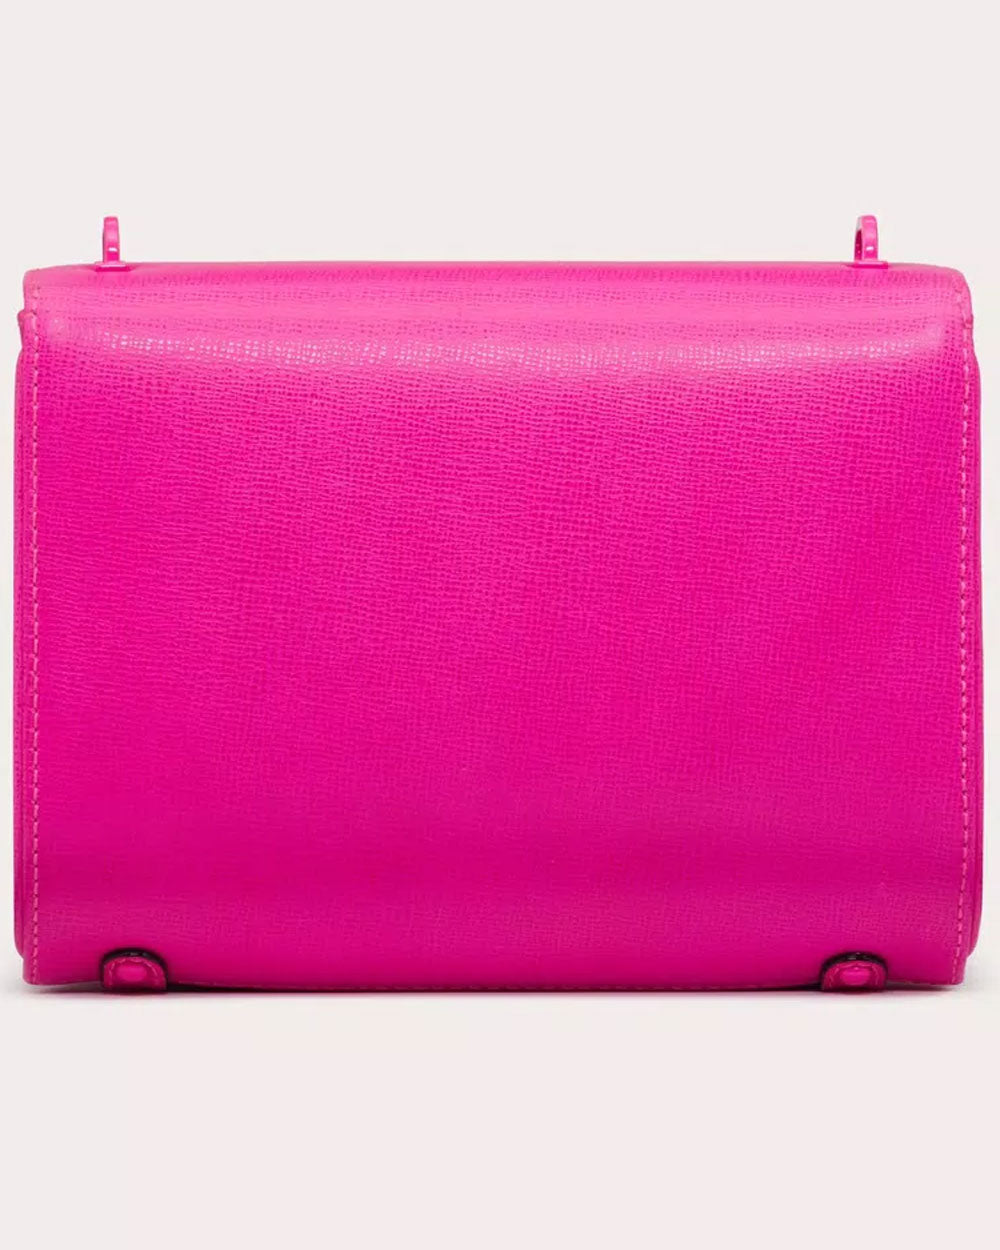 Stud VLOGO Grainy Calfskin Shoulder Bag in Pink PP